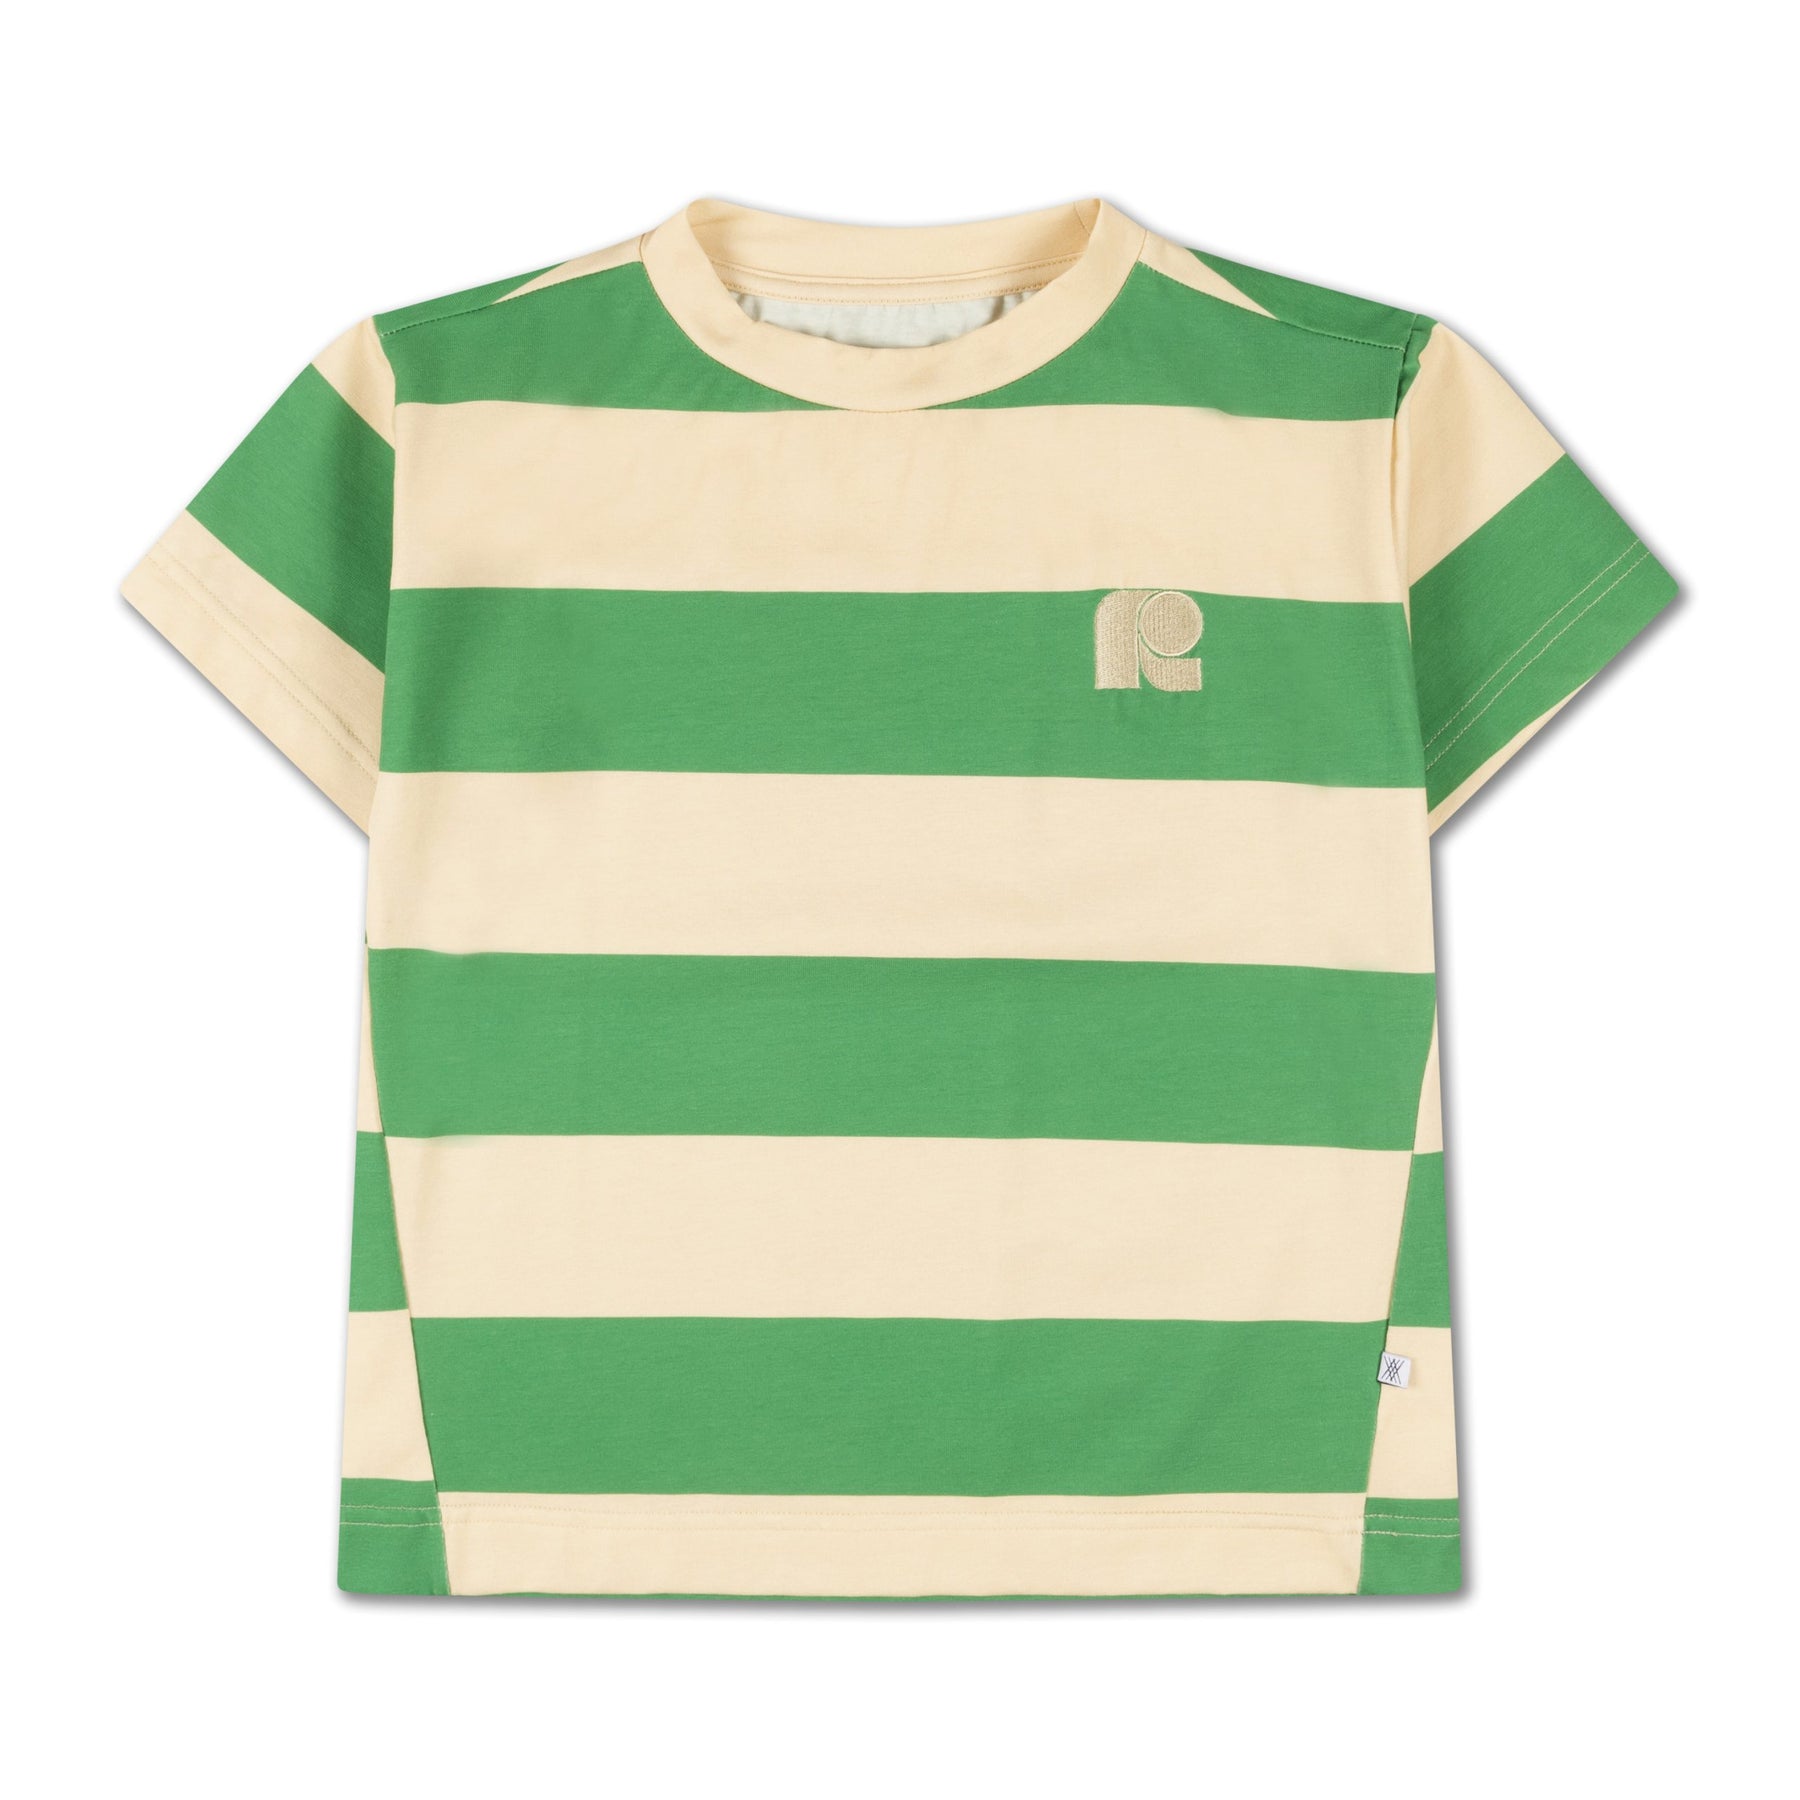 1340_8759fec2ee-29-tee-shirt-blond-green-block-stripe-original